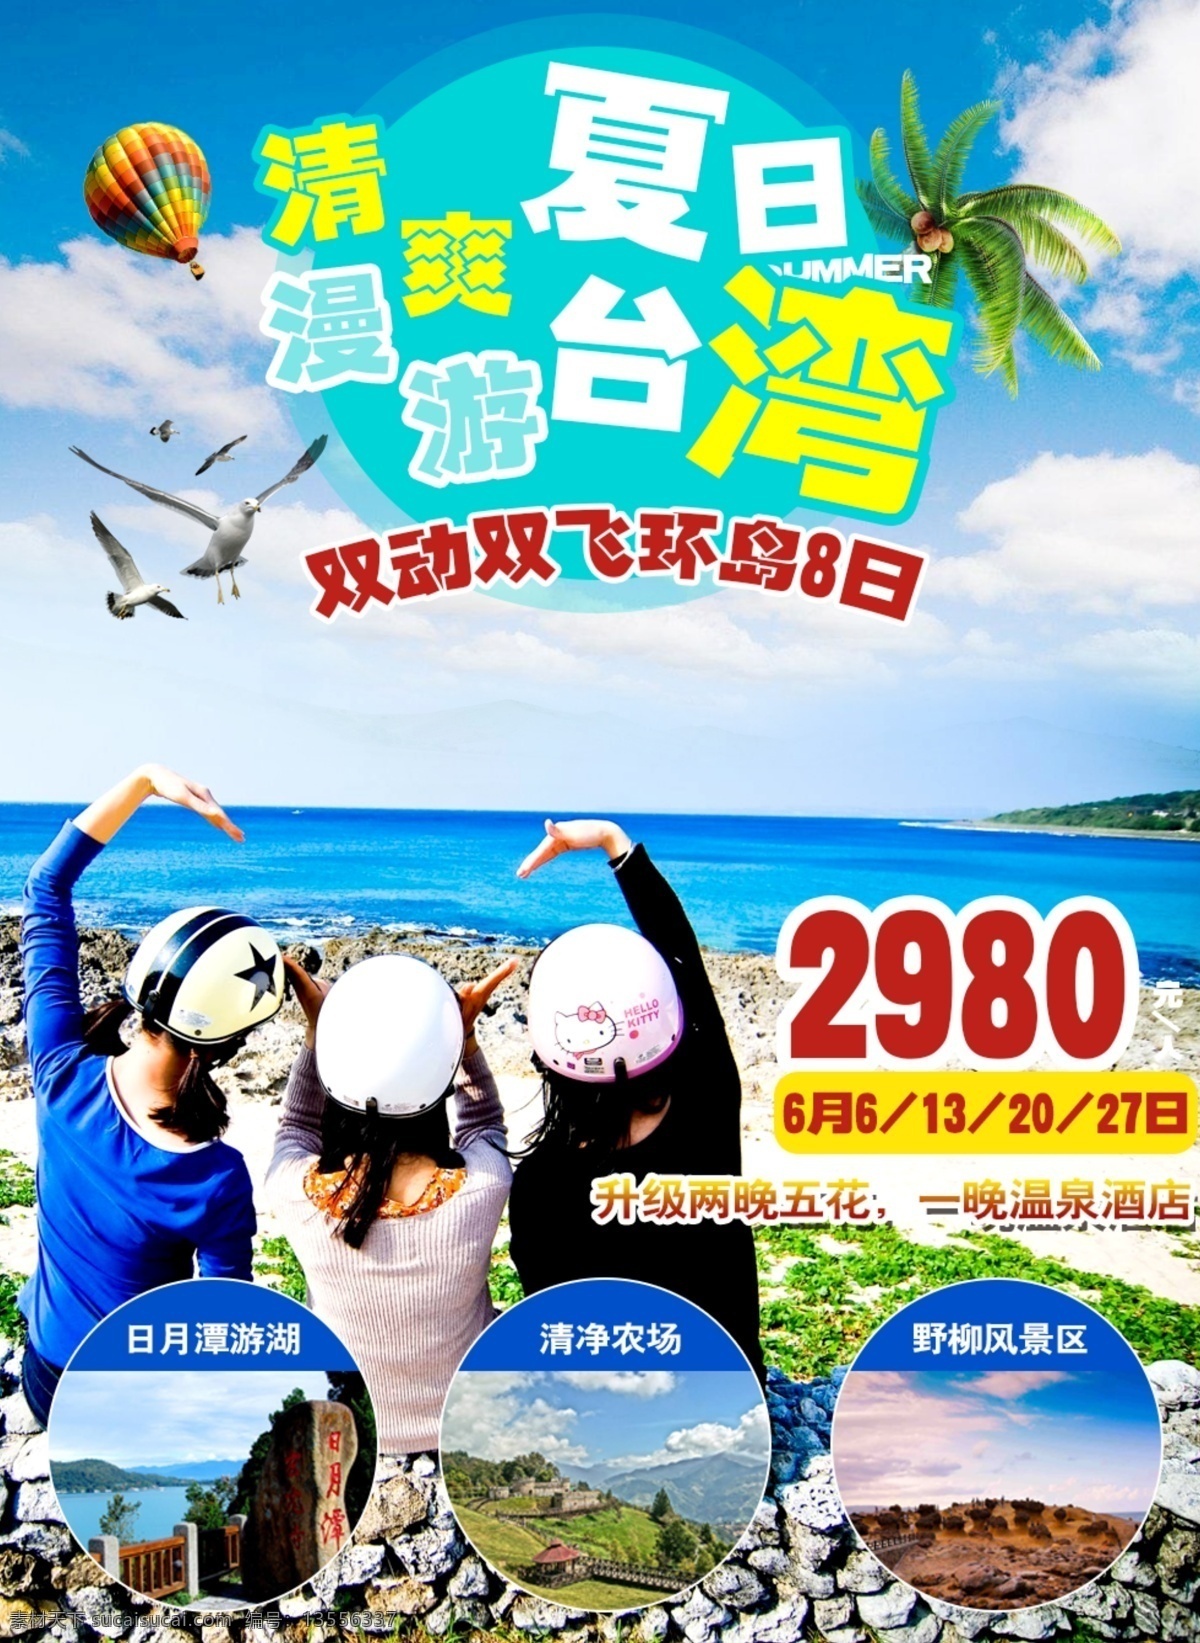 夏日 台湾 日月潭 清净农场 风景区 环岛 宝岛 海鸥 热气球 椰树 海水